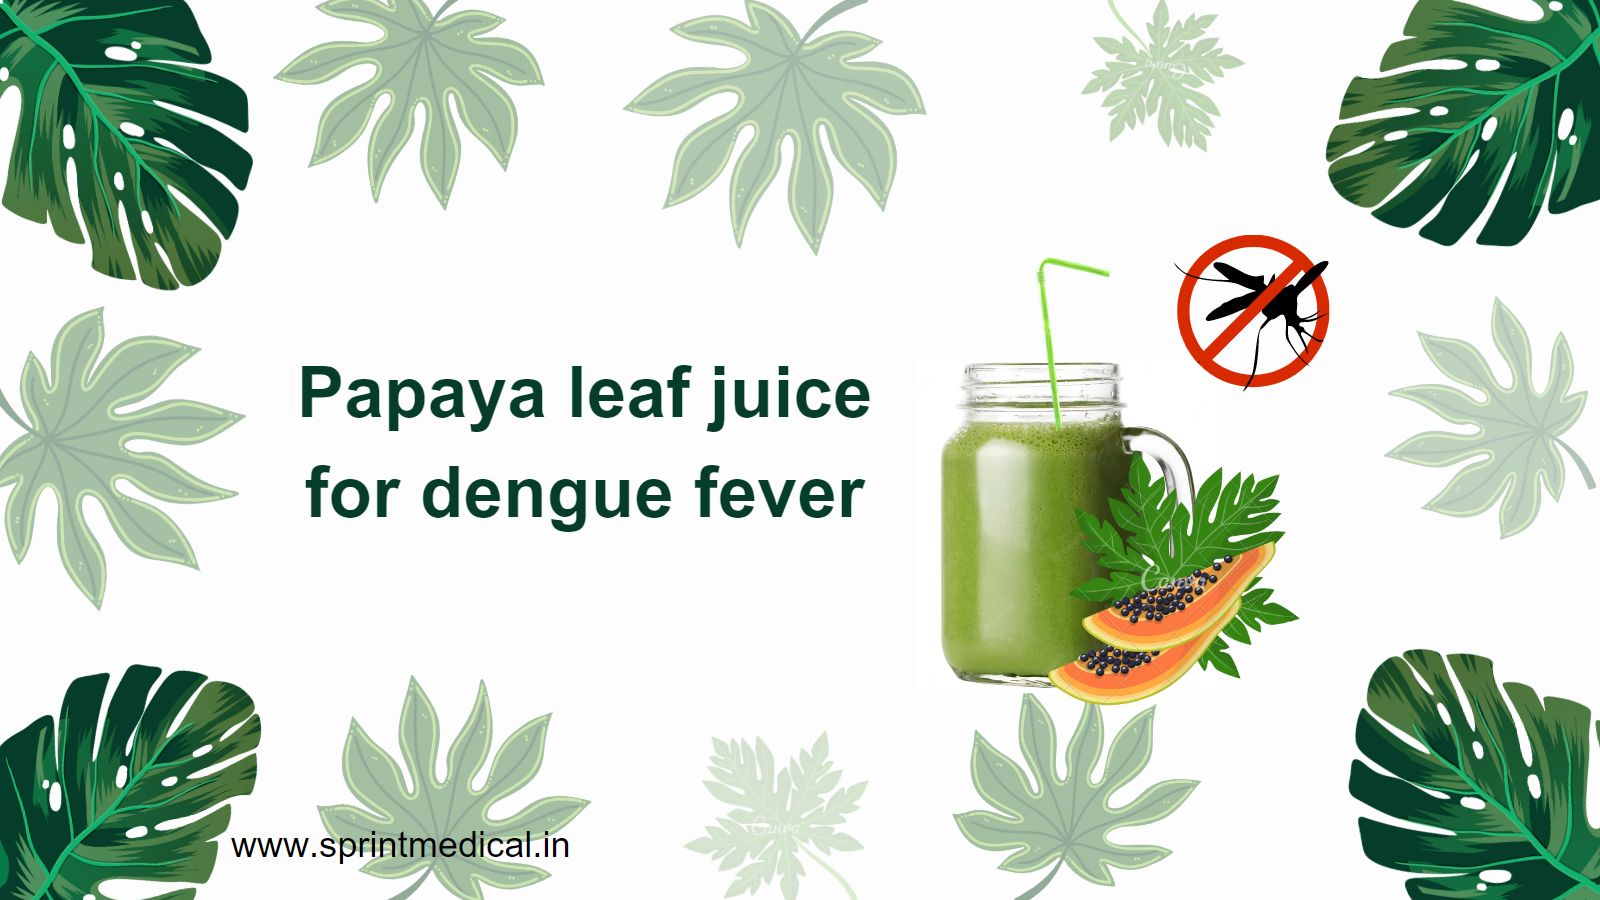 Papaya leaf juice for dengue fever